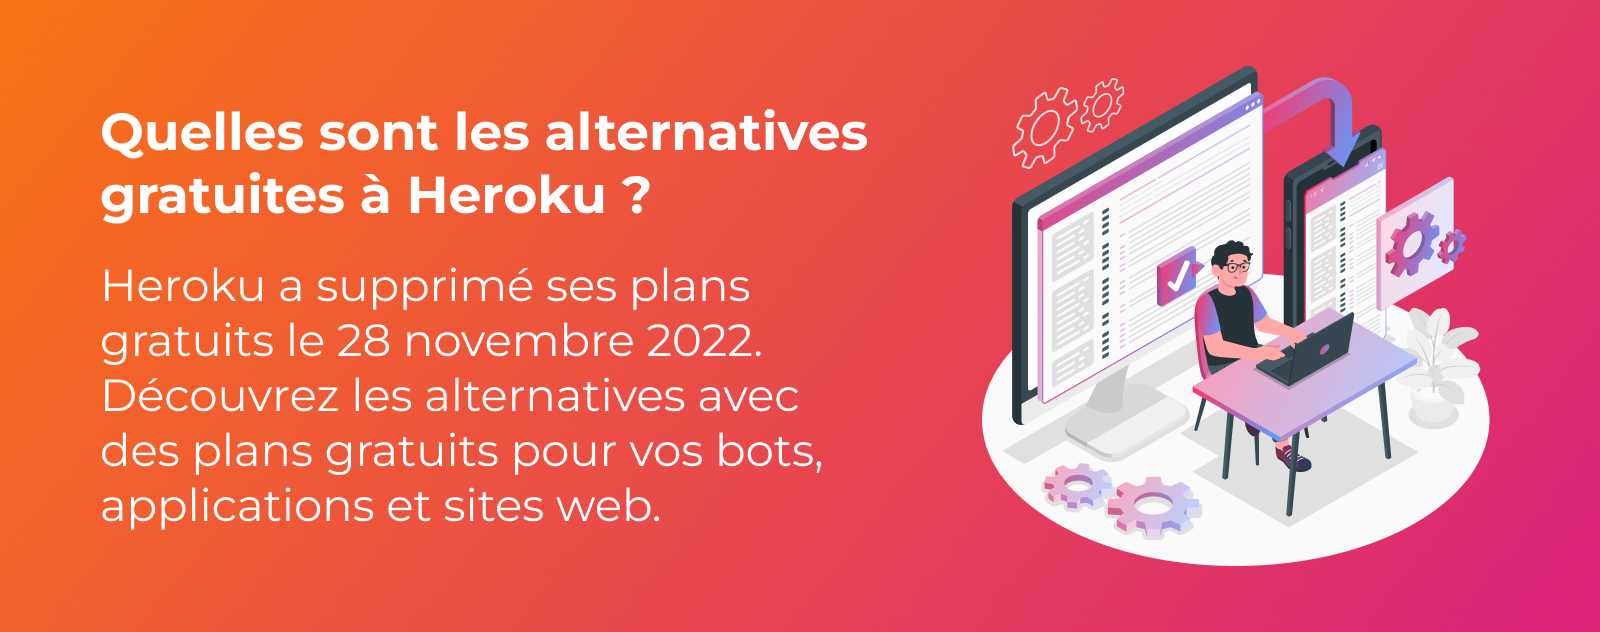 Quelles sont les alternatives gratuites à Heroku ?